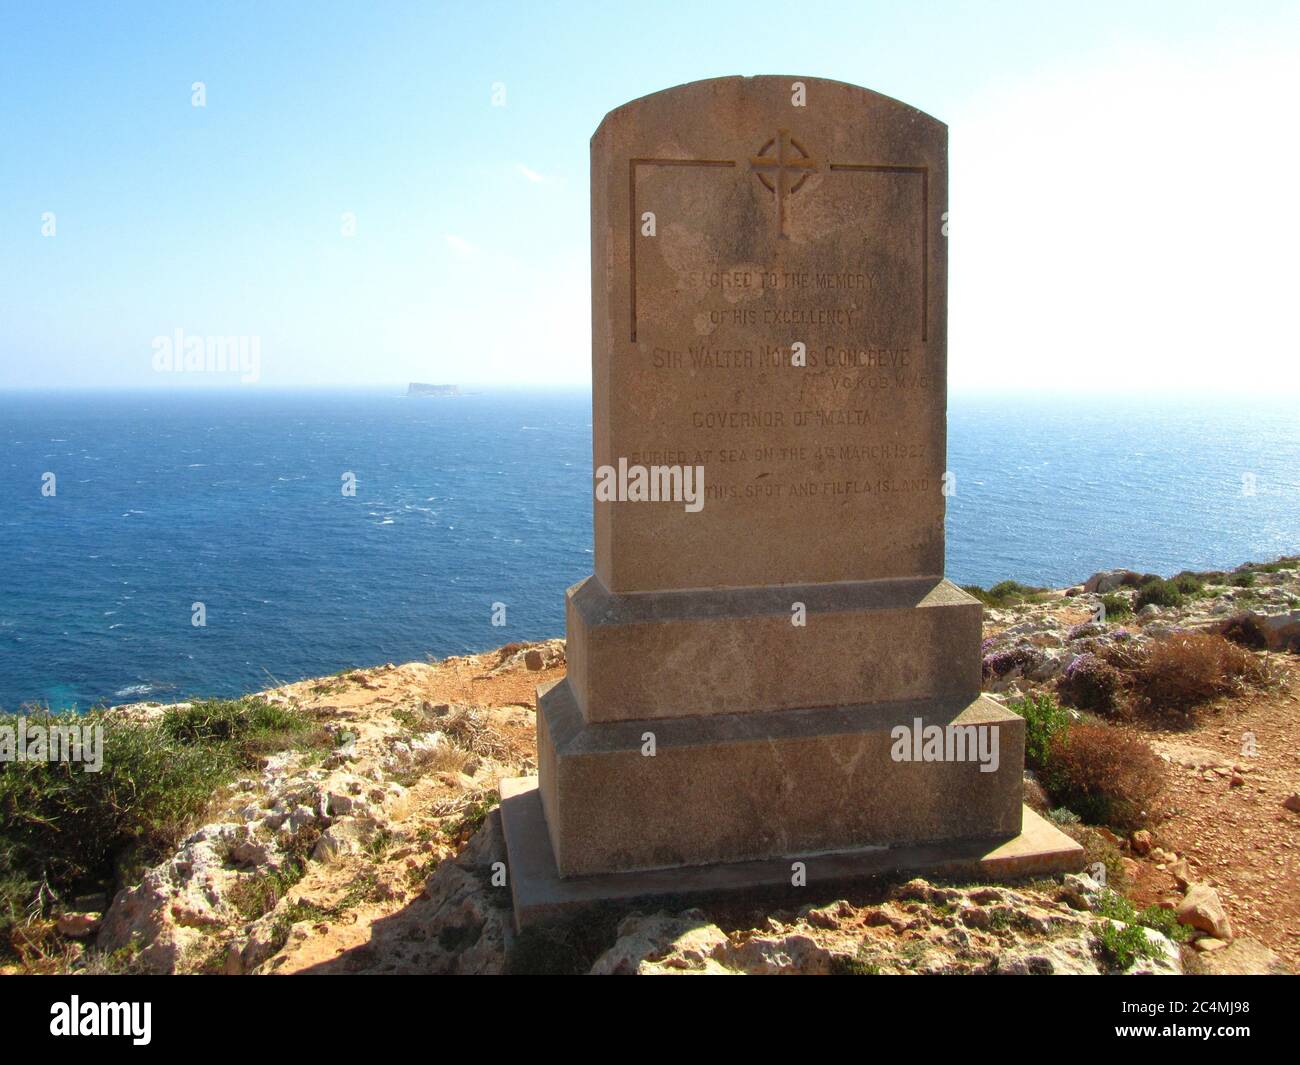 QRENDI, MALTA - 04 giu 2014: Memoriale a Walter Norris Congreve, governatore di Malta, sepolto in mare, tra Malta e Filfla, vicino Imnajdra. Mare blu Foto Stock